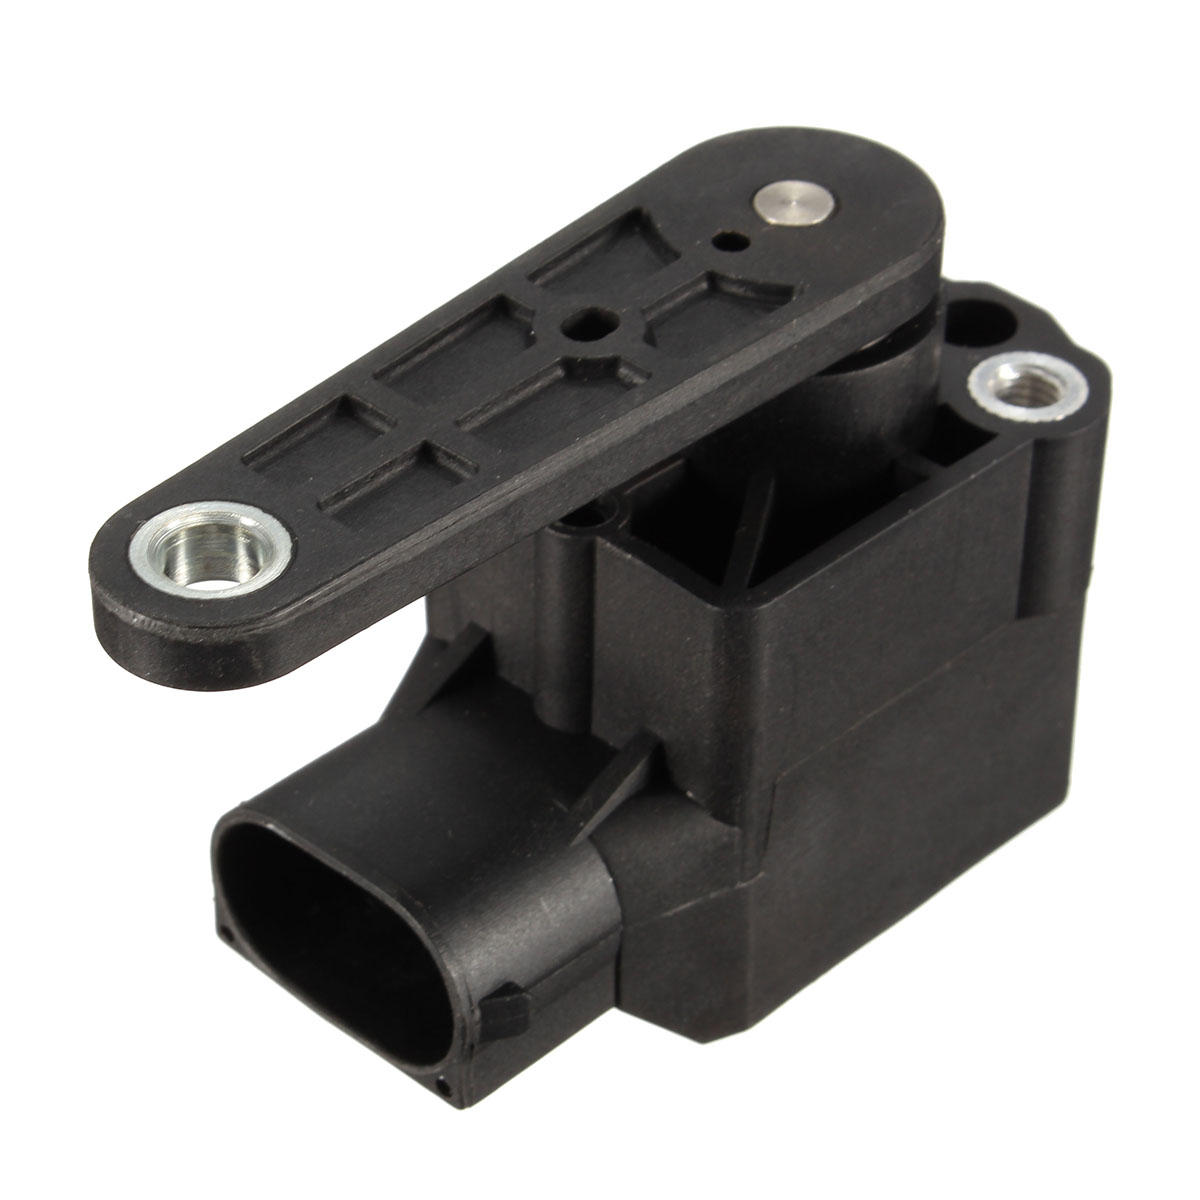 Negro Xenon Coche Interruptor de control de nivel de faros Sensor para AUDI TT A3 A4 S6 A6 VW Bettle Bora Passat 4B09075